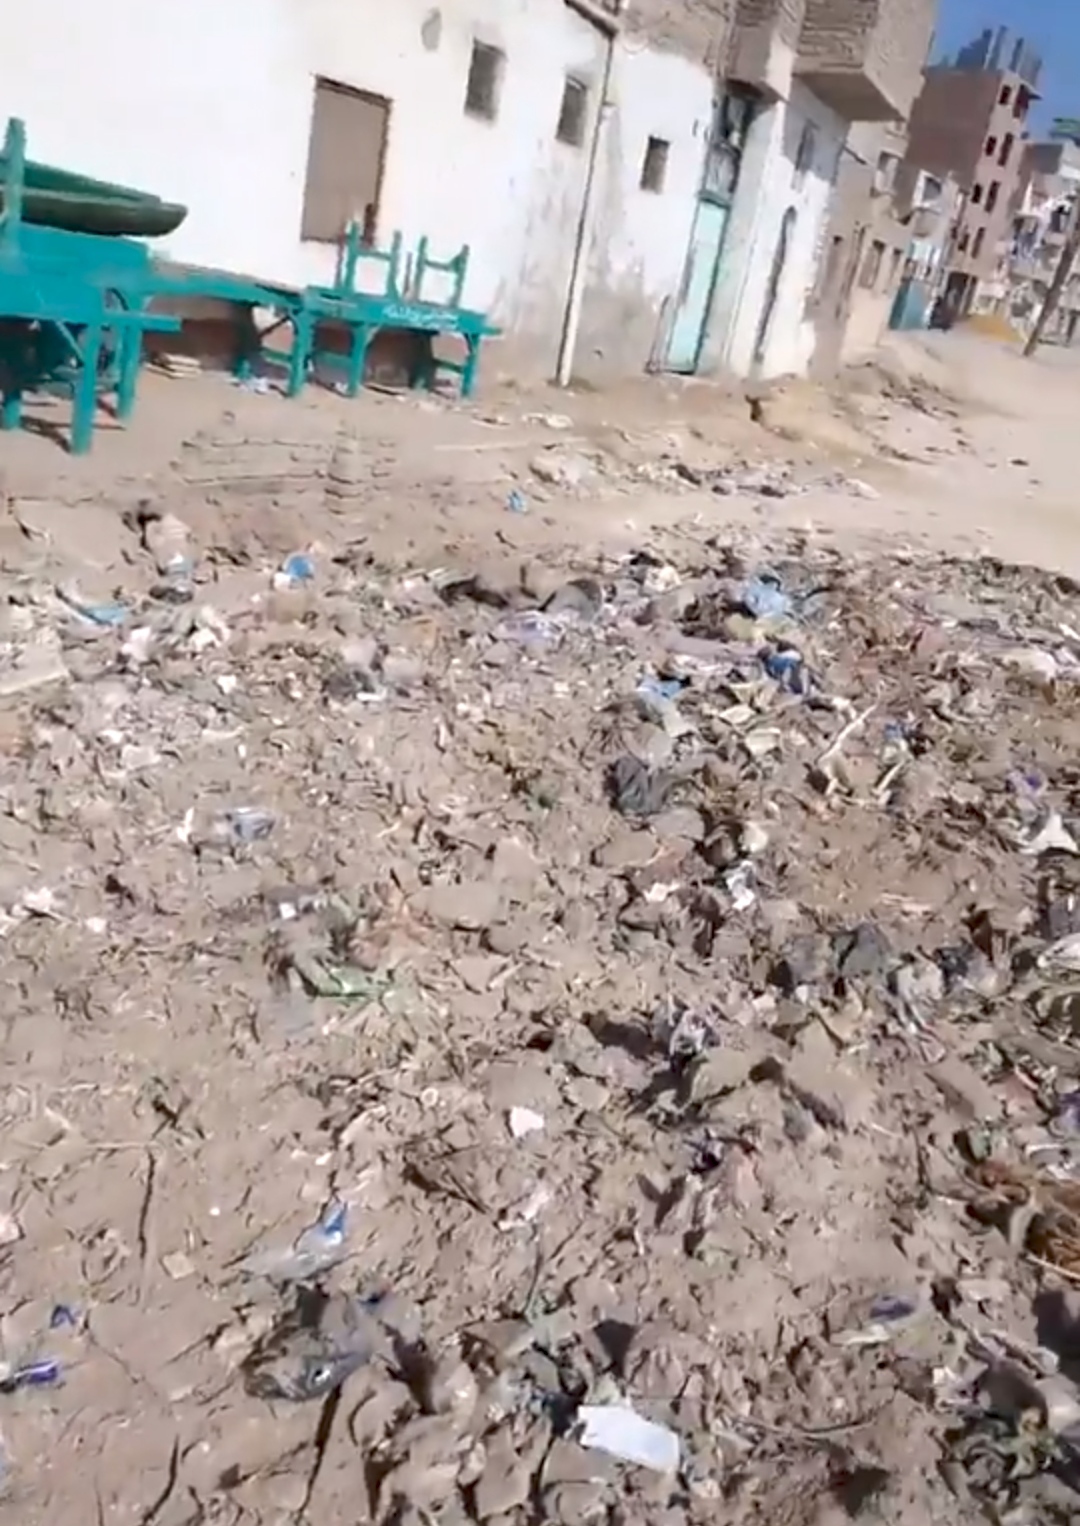 بالصور...القمامة ومدمني المخدرات يحاصرون "مسجد عمر بن الخطاب " بأخميم